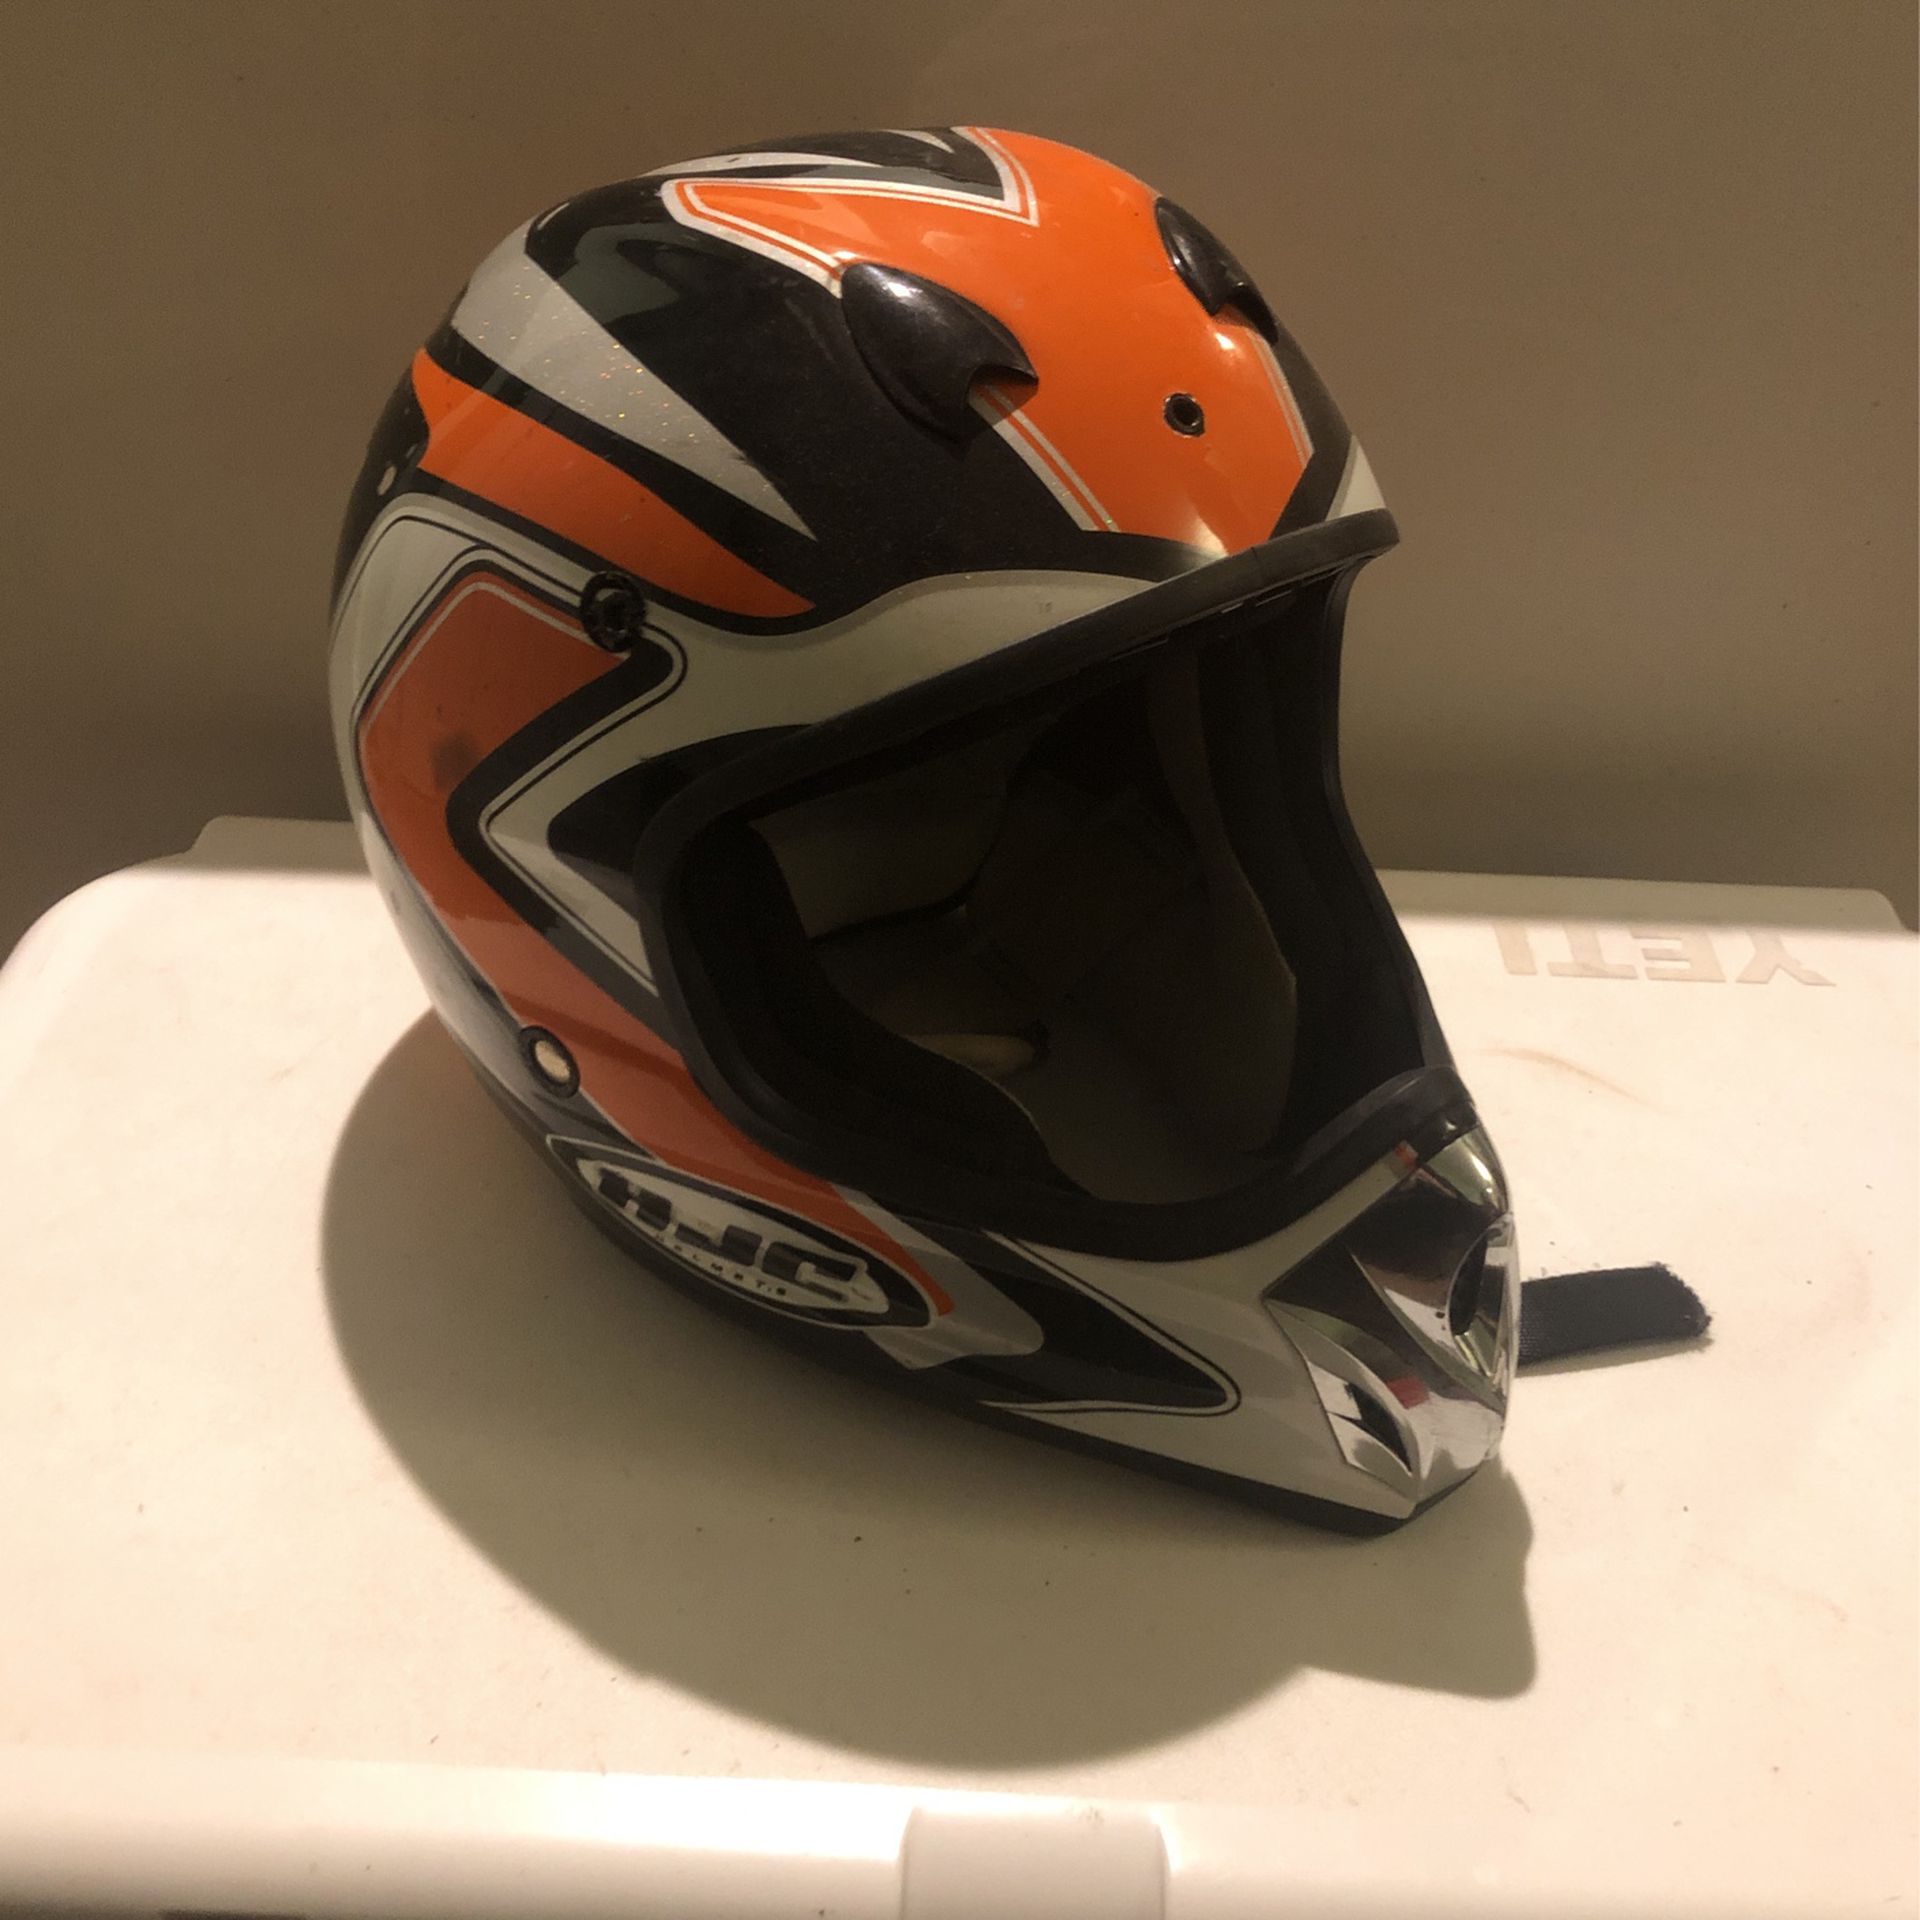 Acx2 Helmet